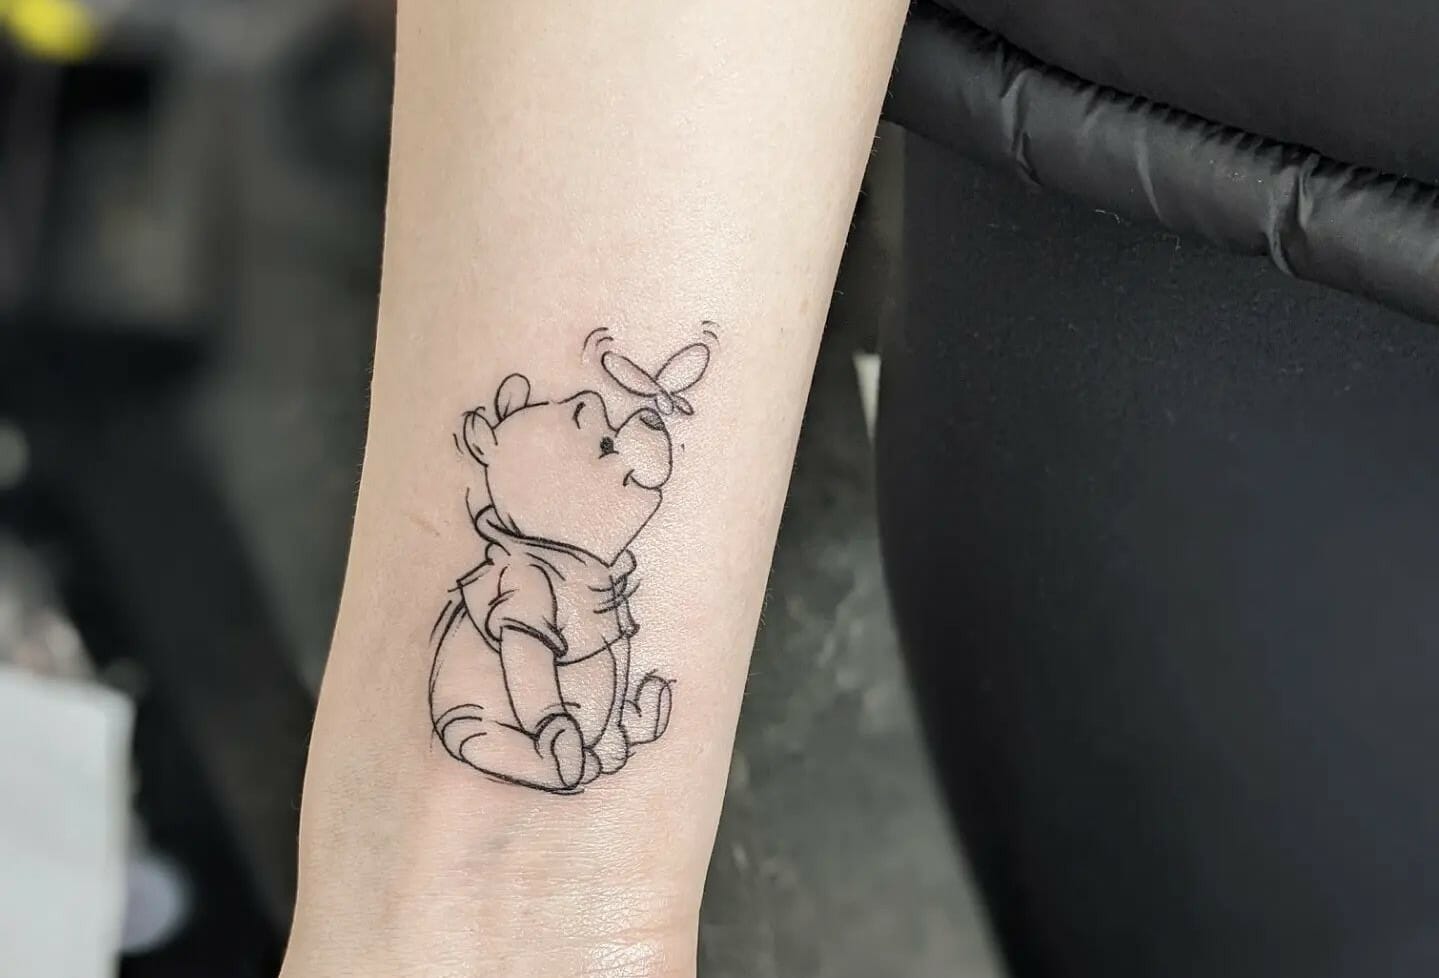 Sweet little Winnie-the-Pooh tattoo done by Jon @ Atomic tattoos, Oxford. :  r/tattoos